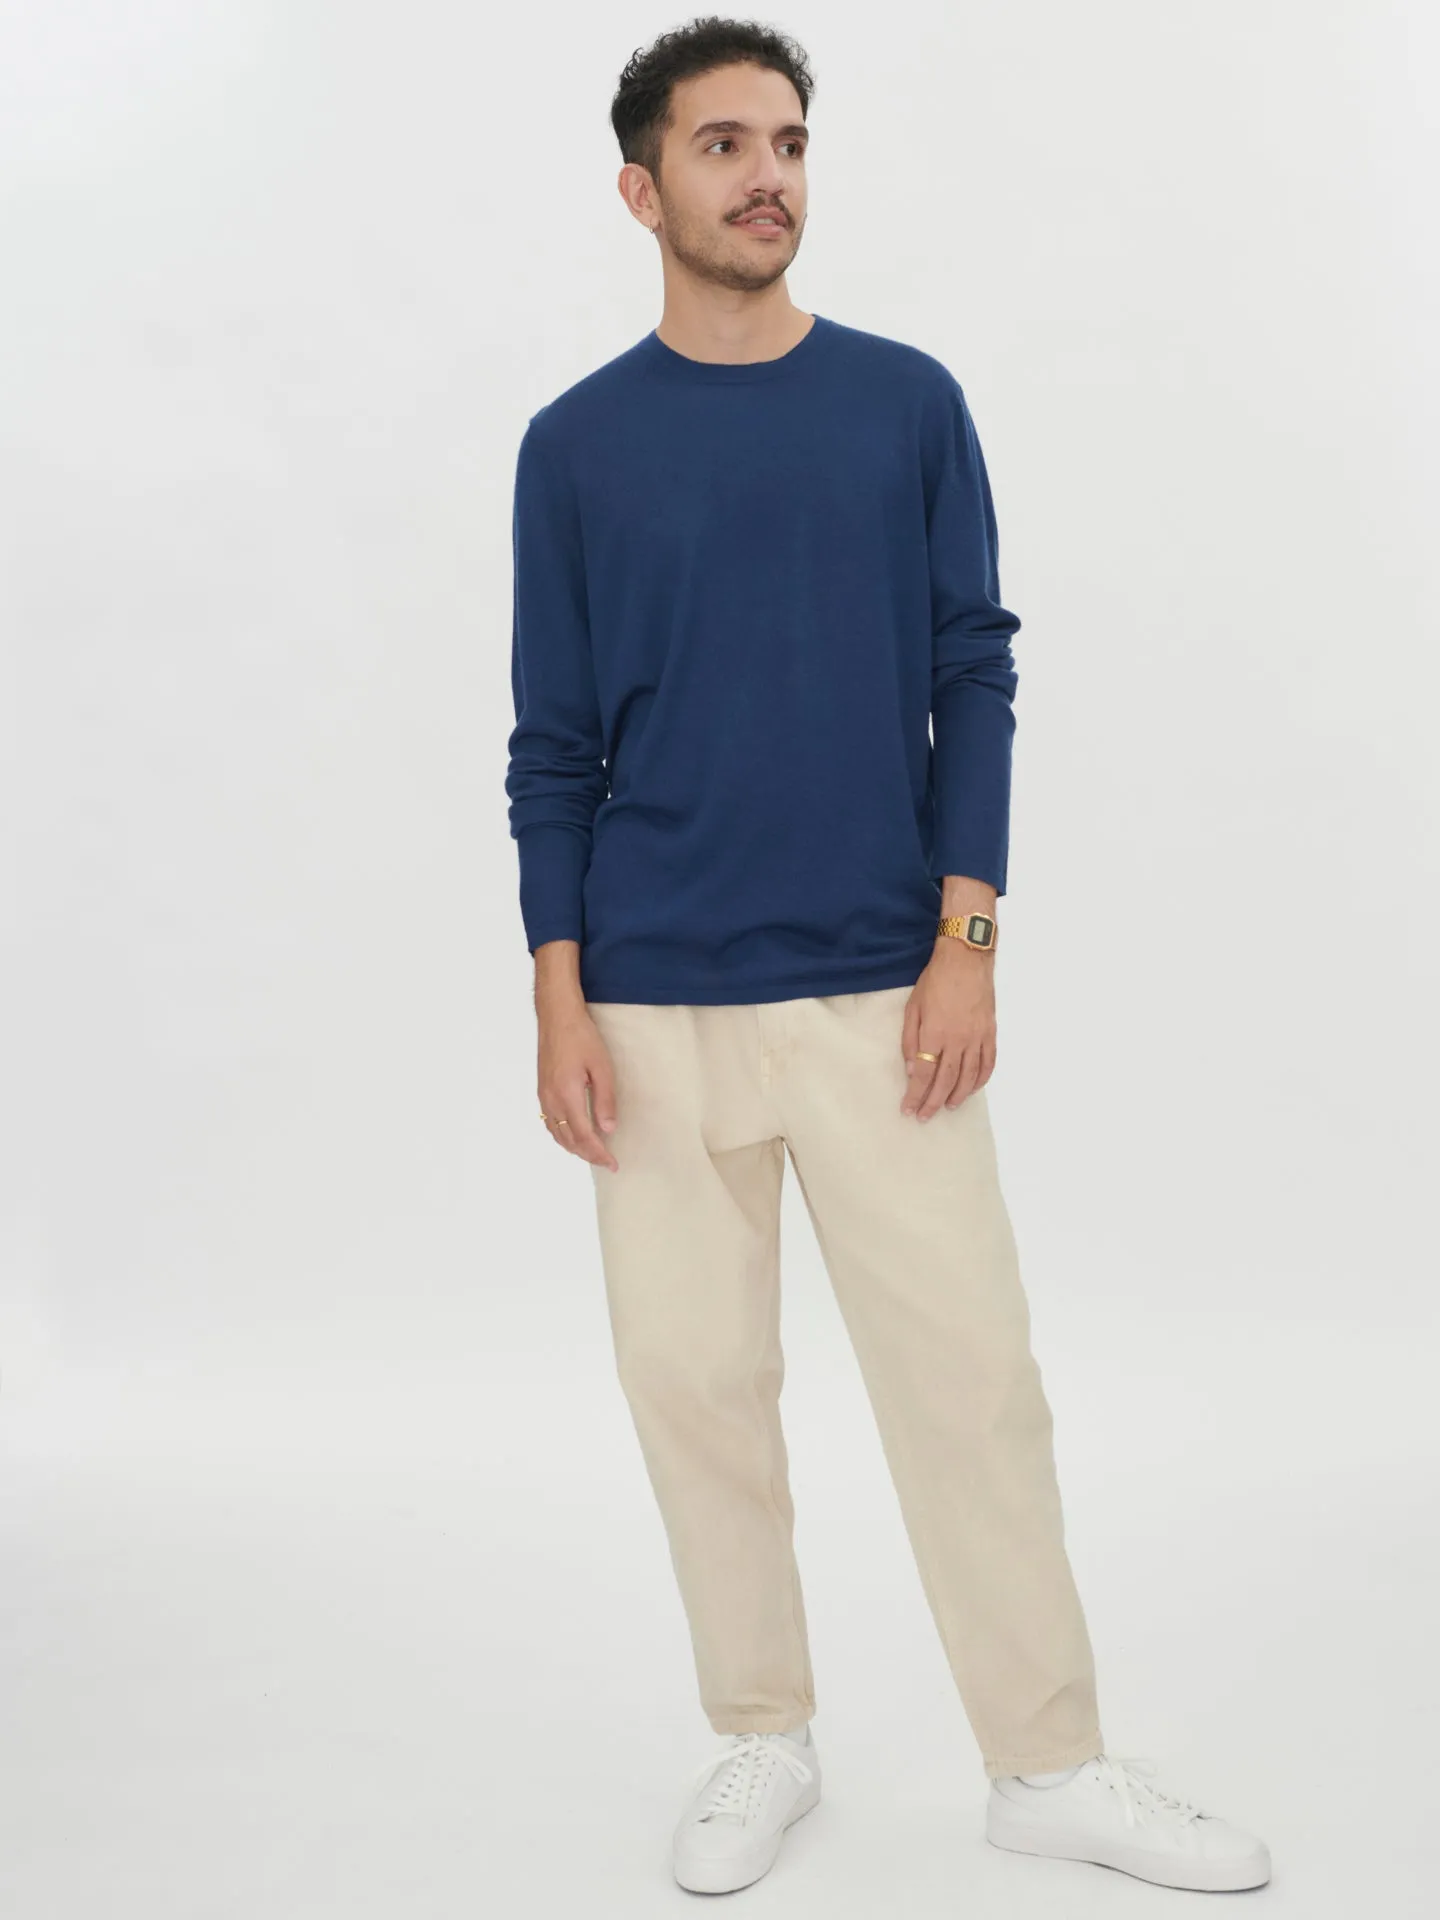 Men's Cashmere Silk Round Neck Navy - Gobi Cashmere 